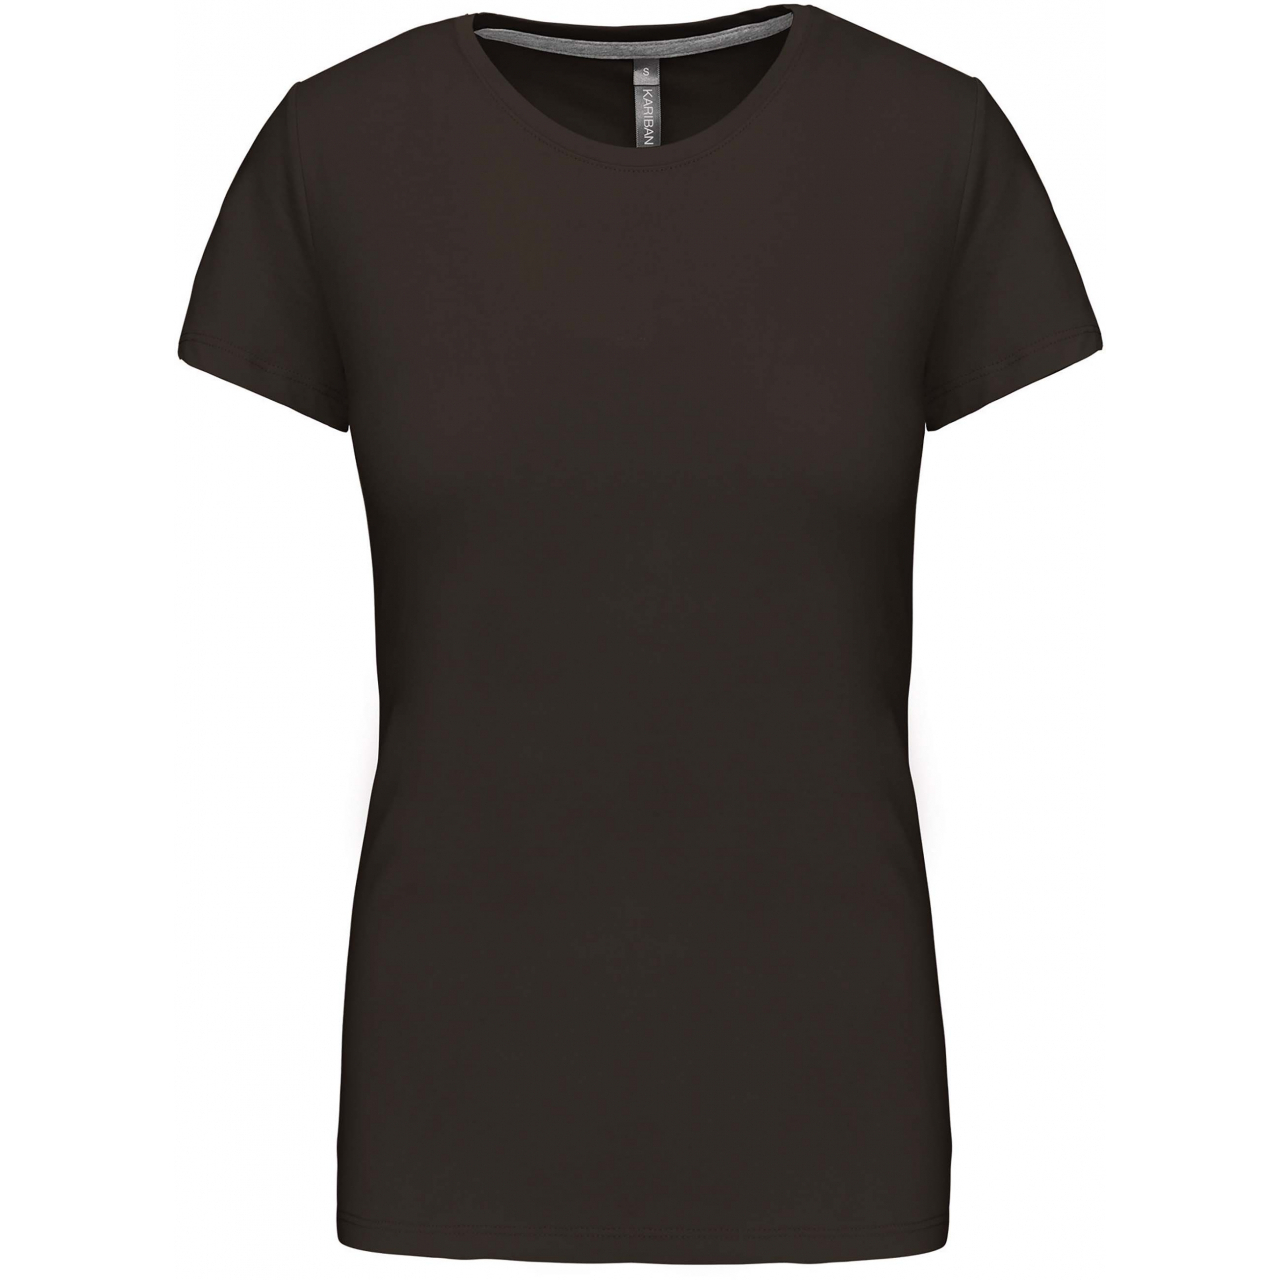 Dámské tričko Kariban s krátkým rukávem - tmavé khaki, XL